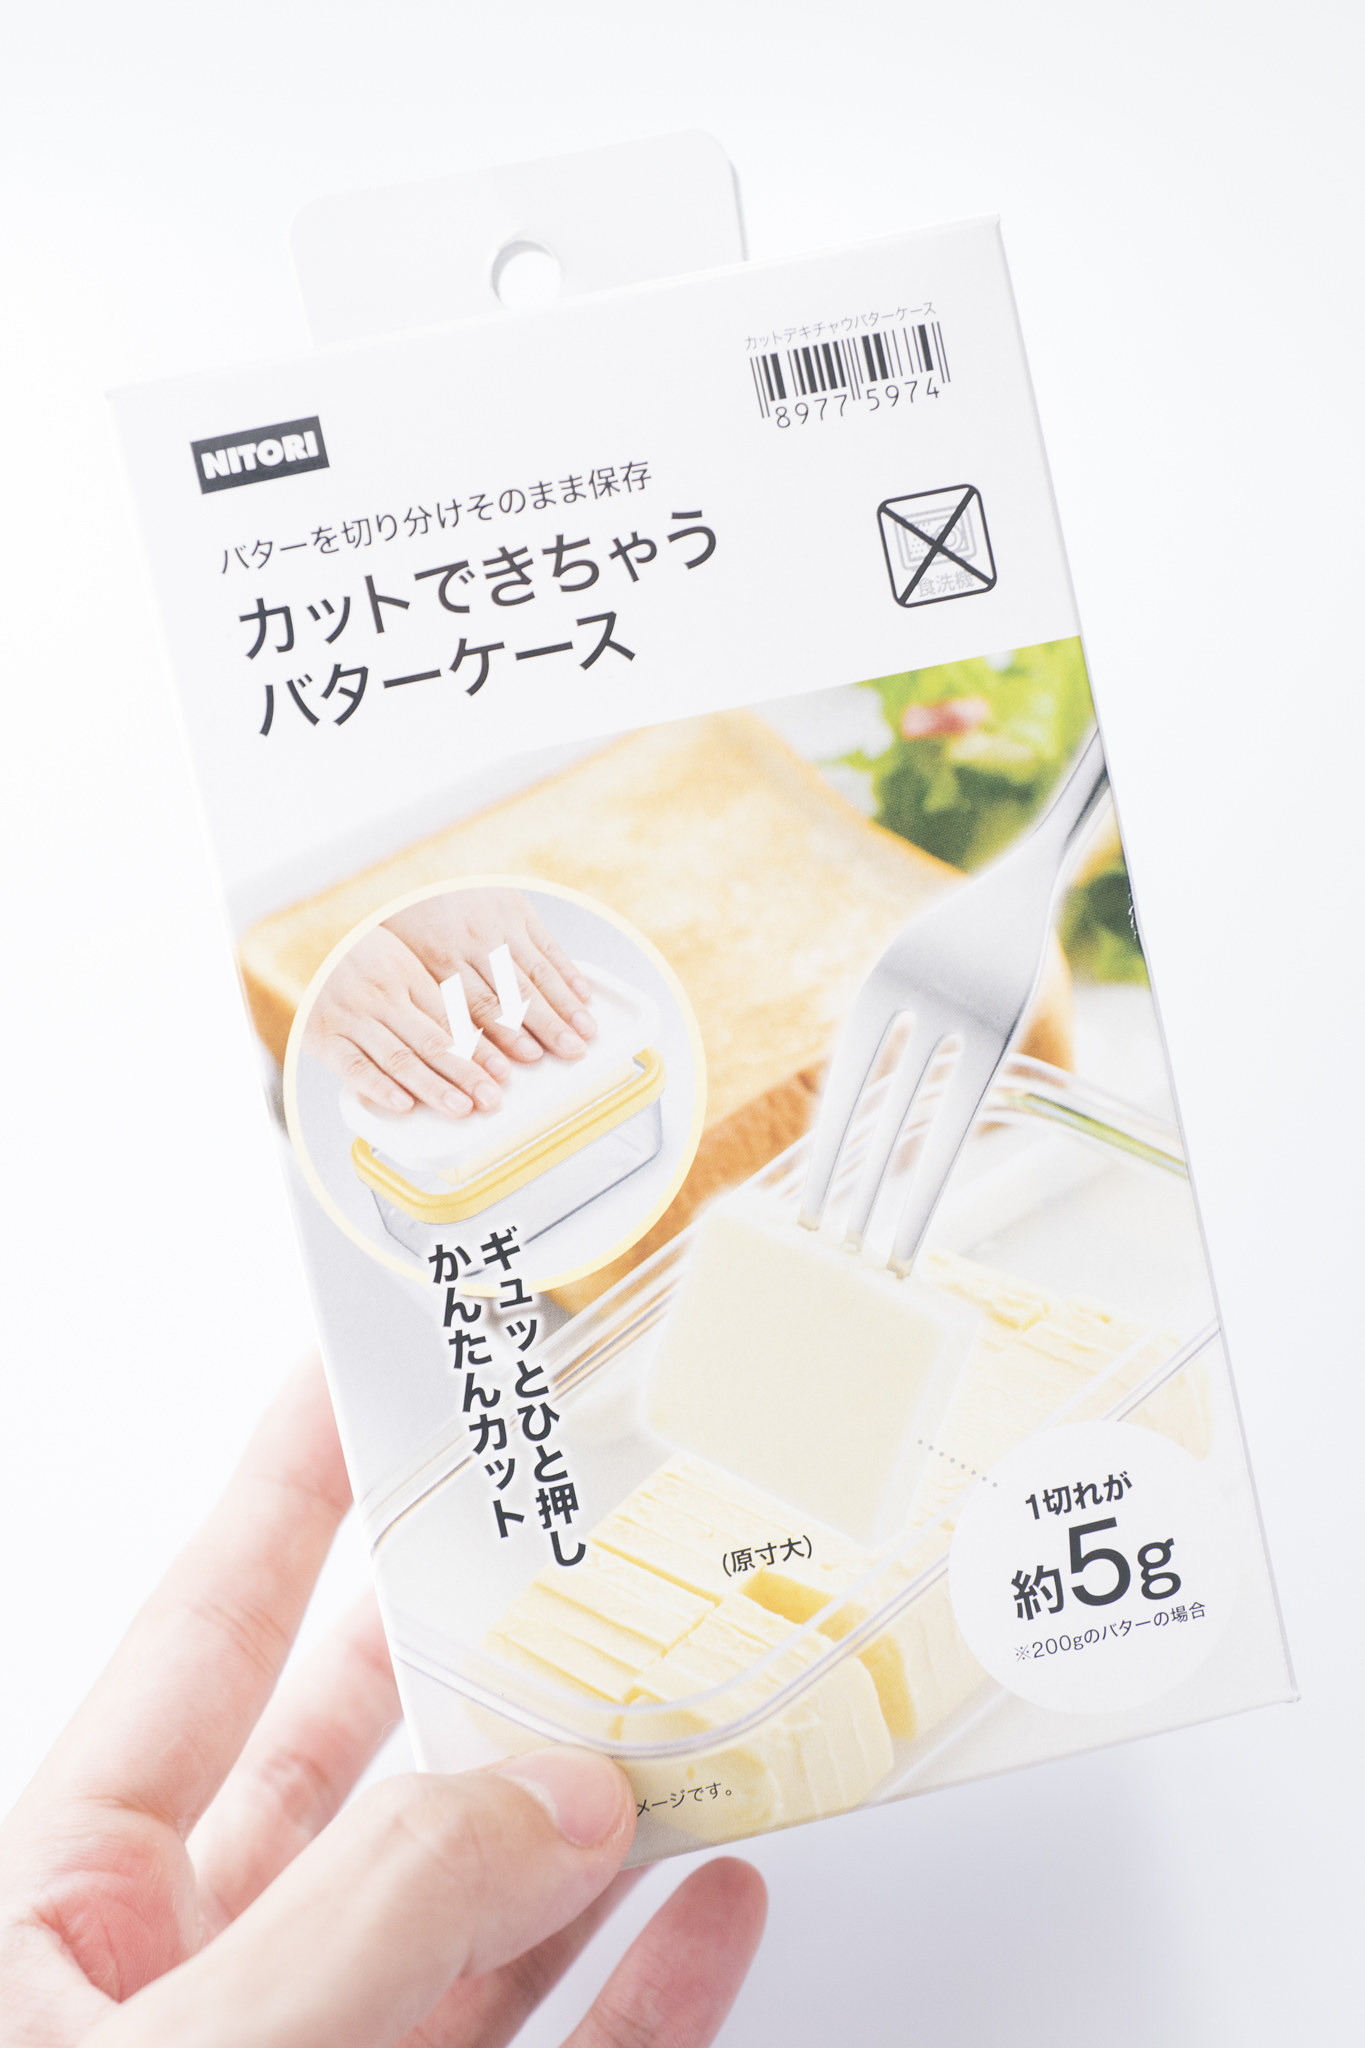 NITORI（ニトリ）のおすすめキッチン雑貨「カットできちゃうバターケース」料理が楽になった